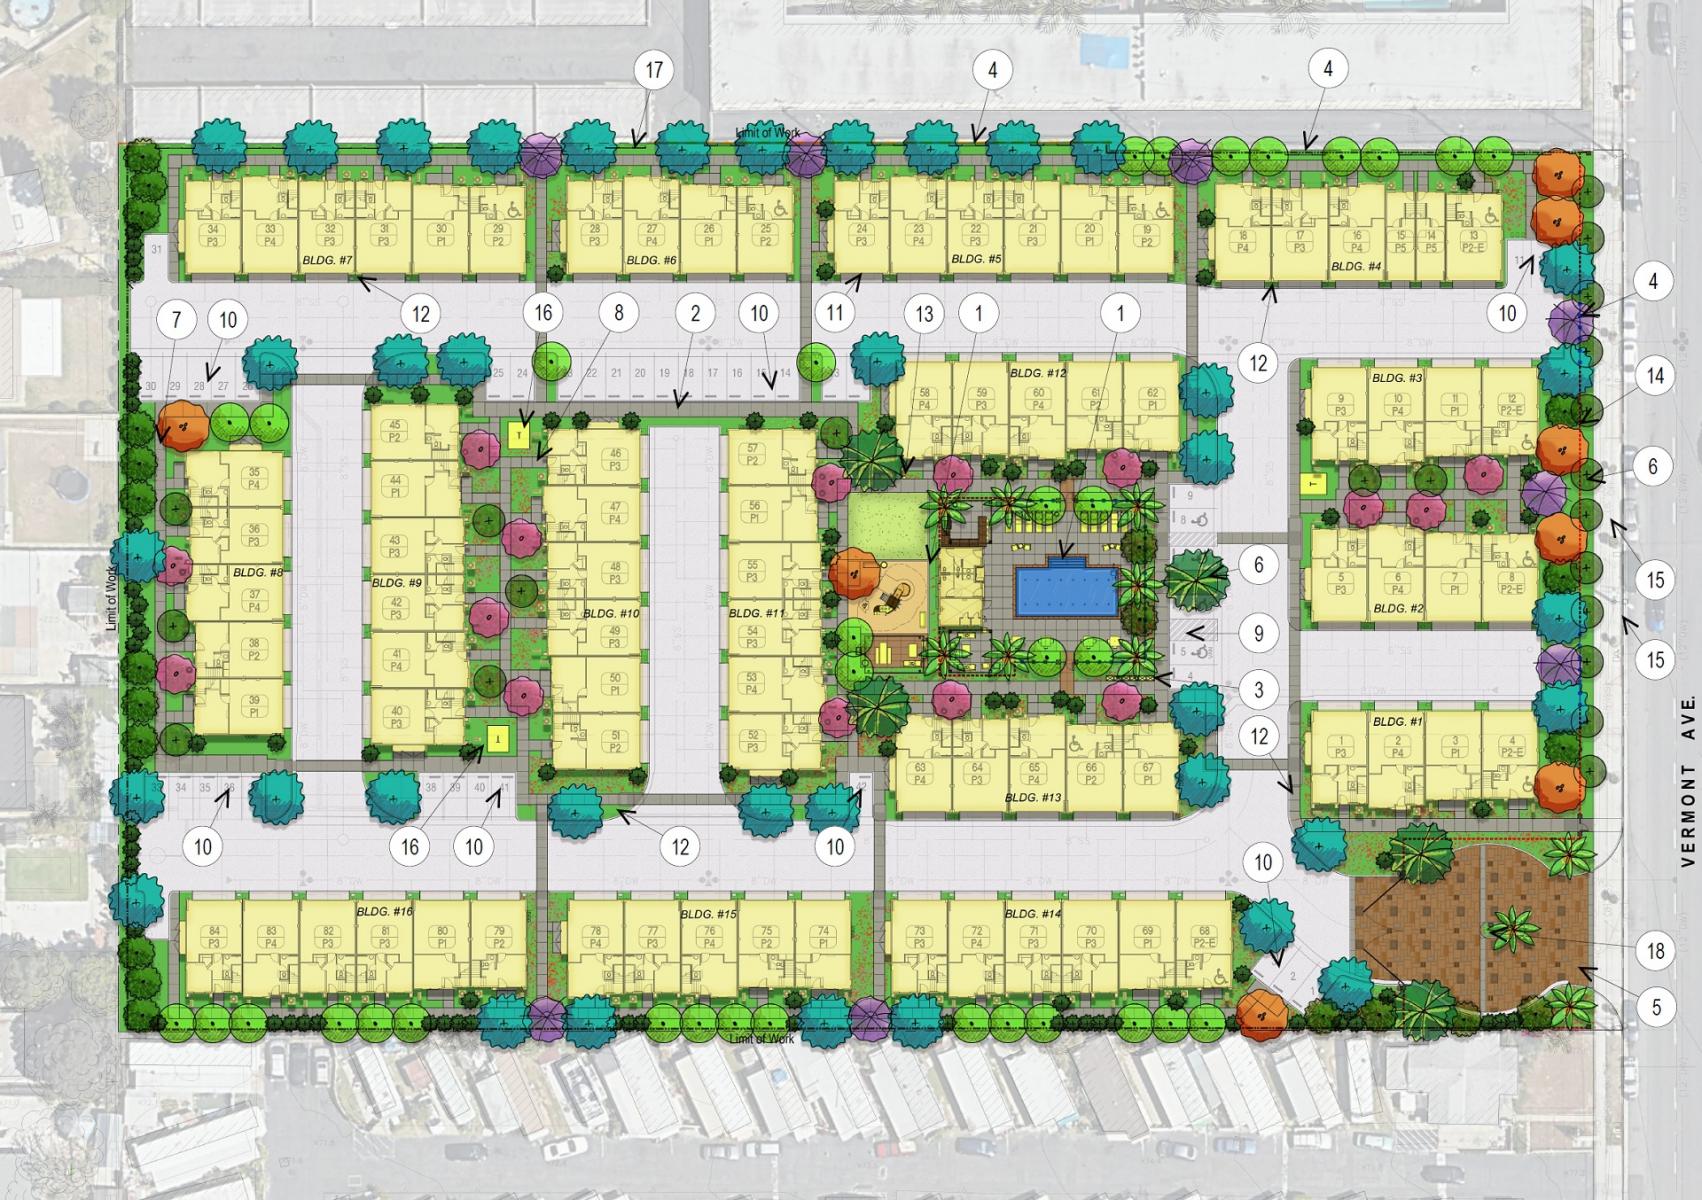 13615-13633 South Vermont Avenue Site Plan